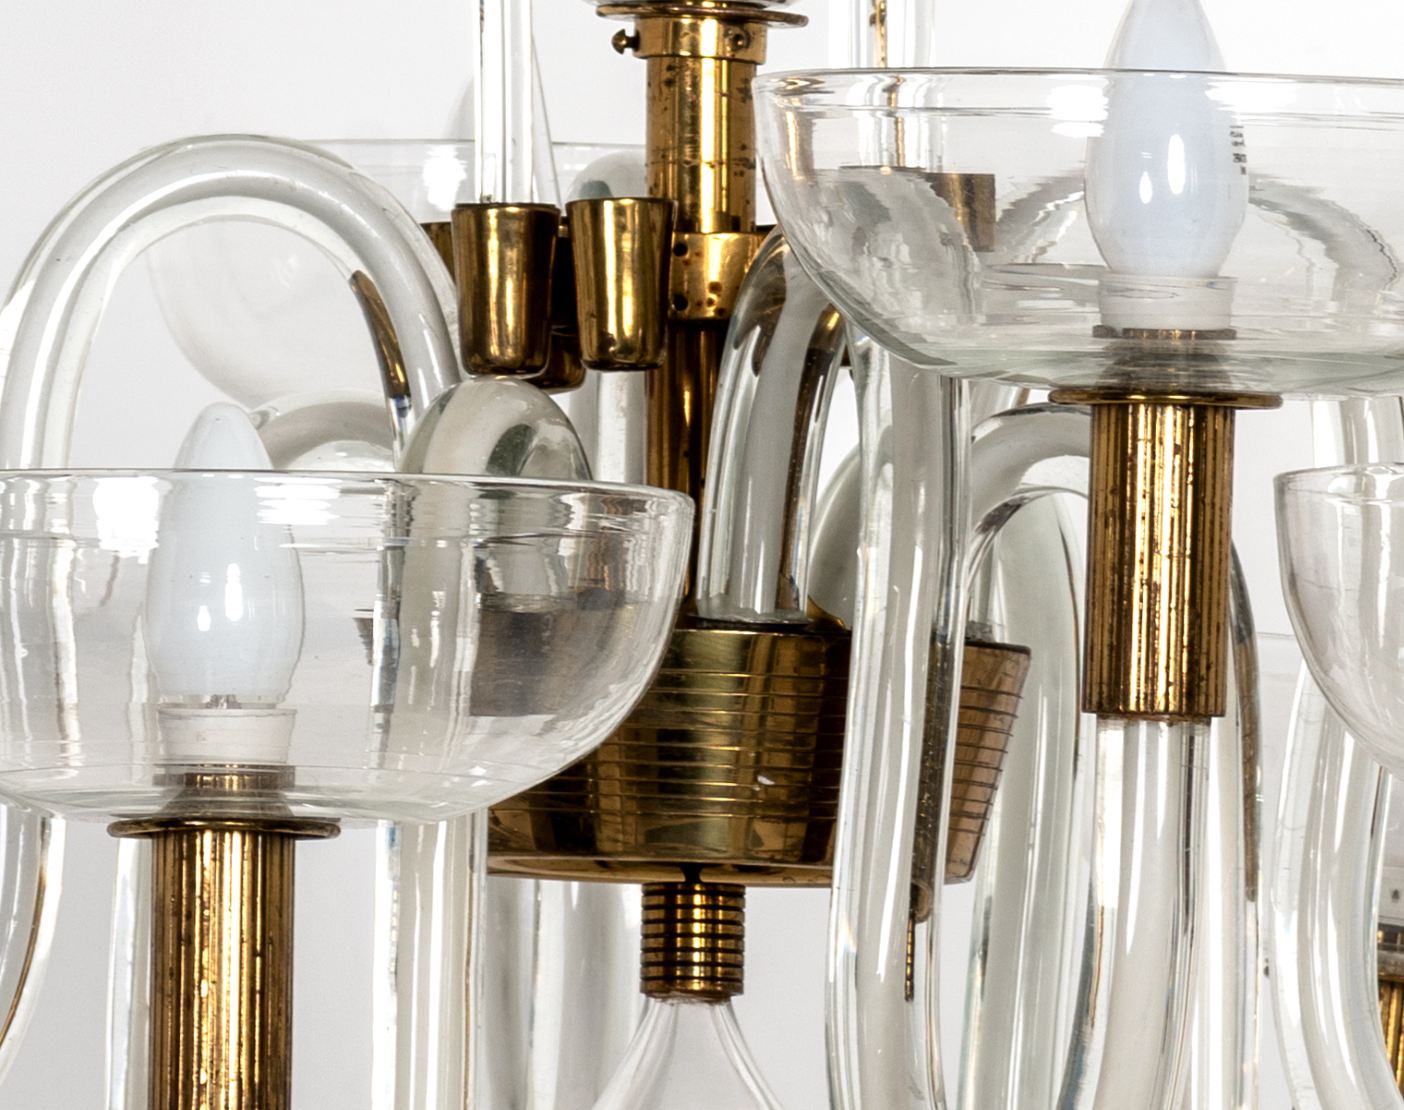 Carlo Scarpa's pioneering glassware at The Met, architecture, Agenda